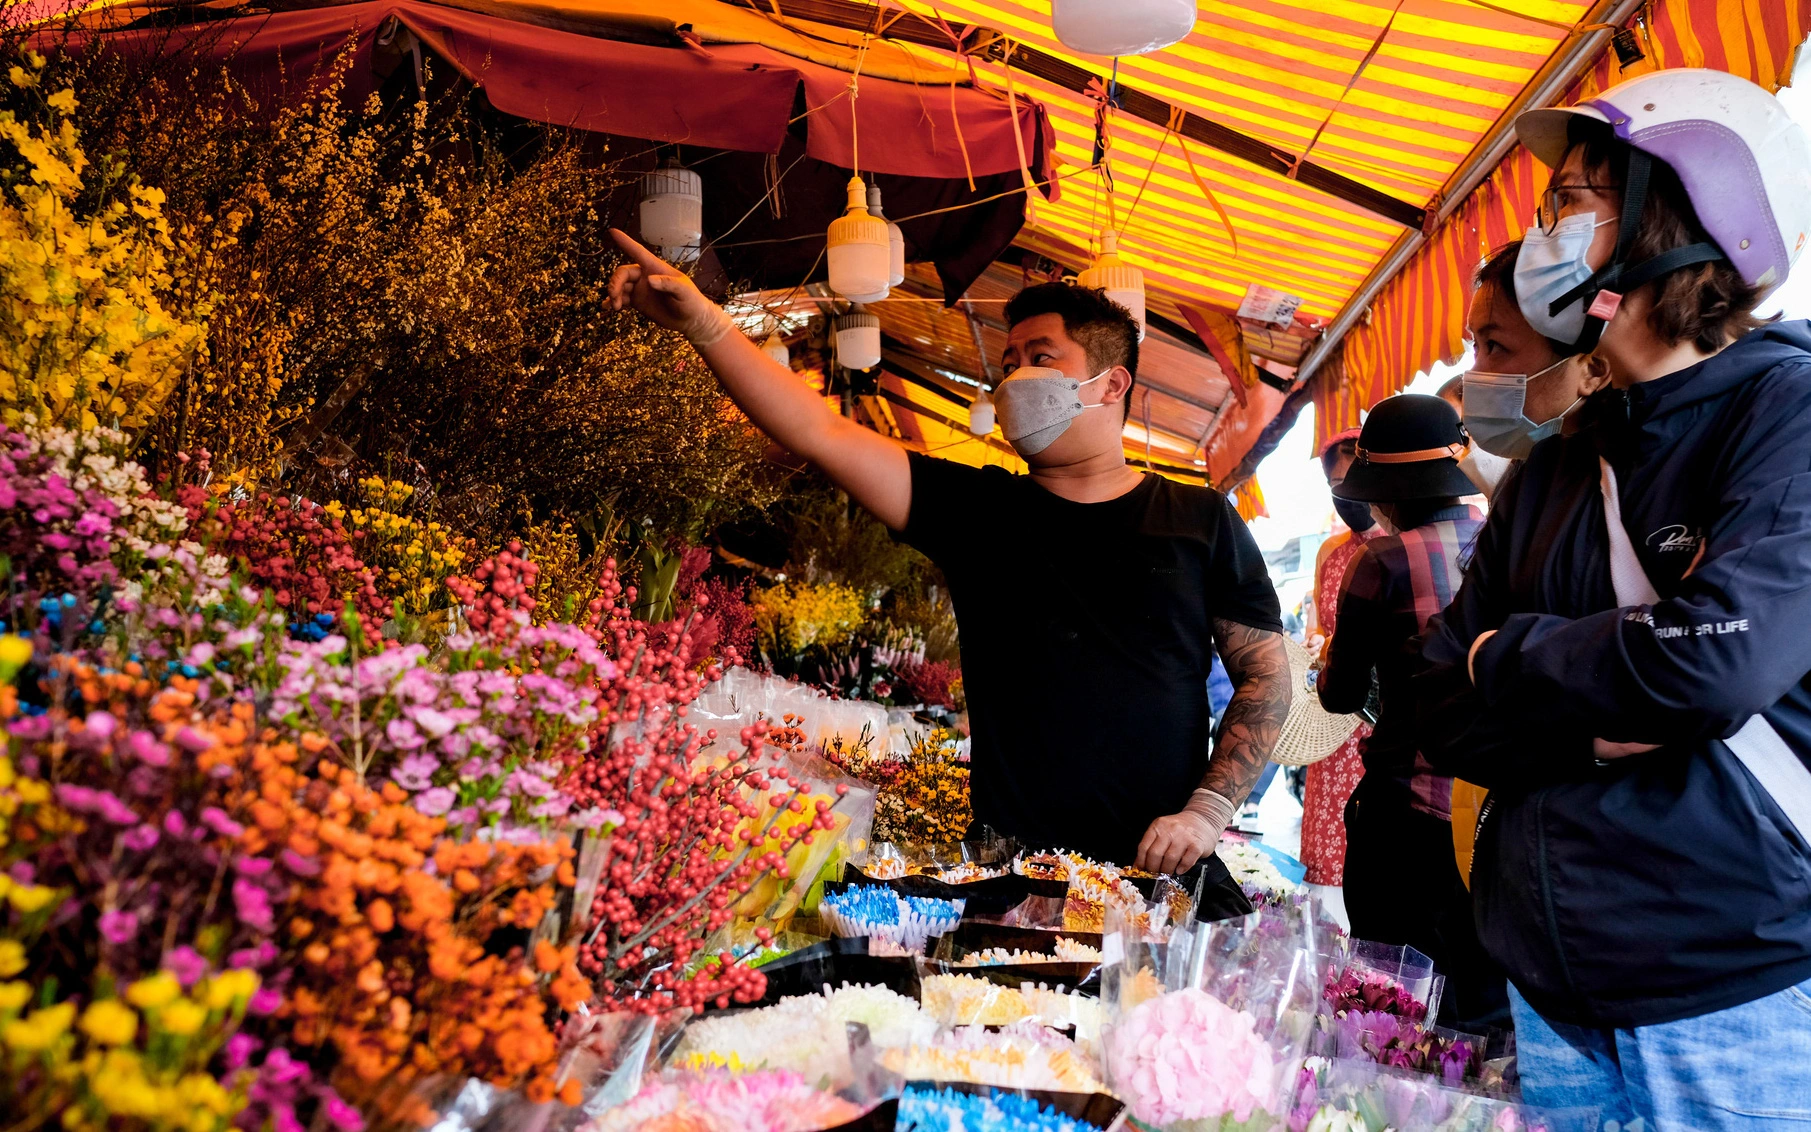 28 Tết cập nhật nhanh giá chợ hoa Quảng Bá: Tăng 20% so với ngày thường, mua nhanh 5 cành đào đông cắm đẹp nhà hết 2,2 triệu